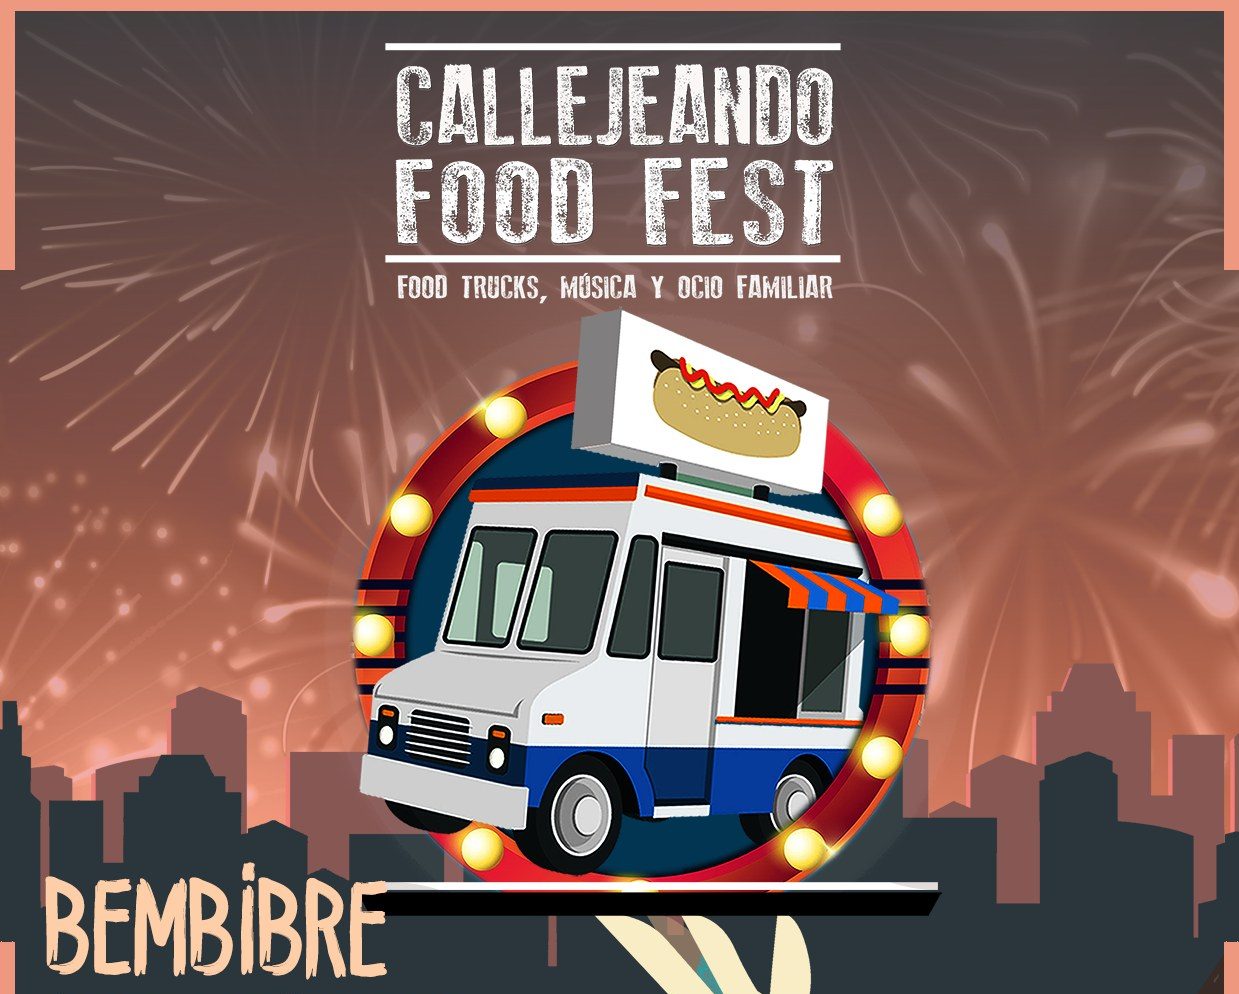 CRISTO 2023 Bembibre, esto es lo que podrás ver y comer en el Callejeando Food Fest 1